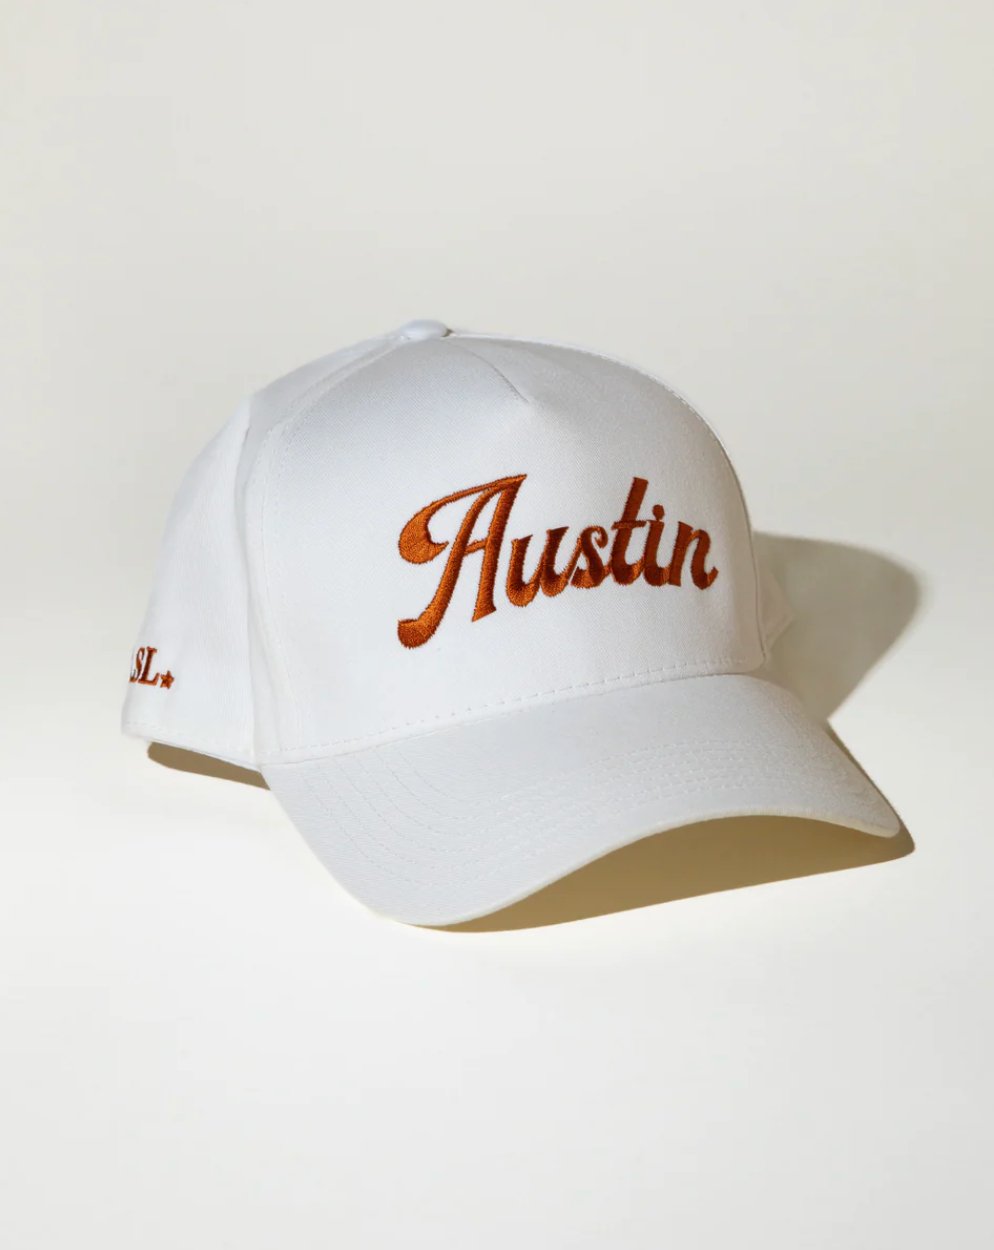 Longhorn "Austin" Canvas Trucker Hat - Addie Rose Boutique - Austin